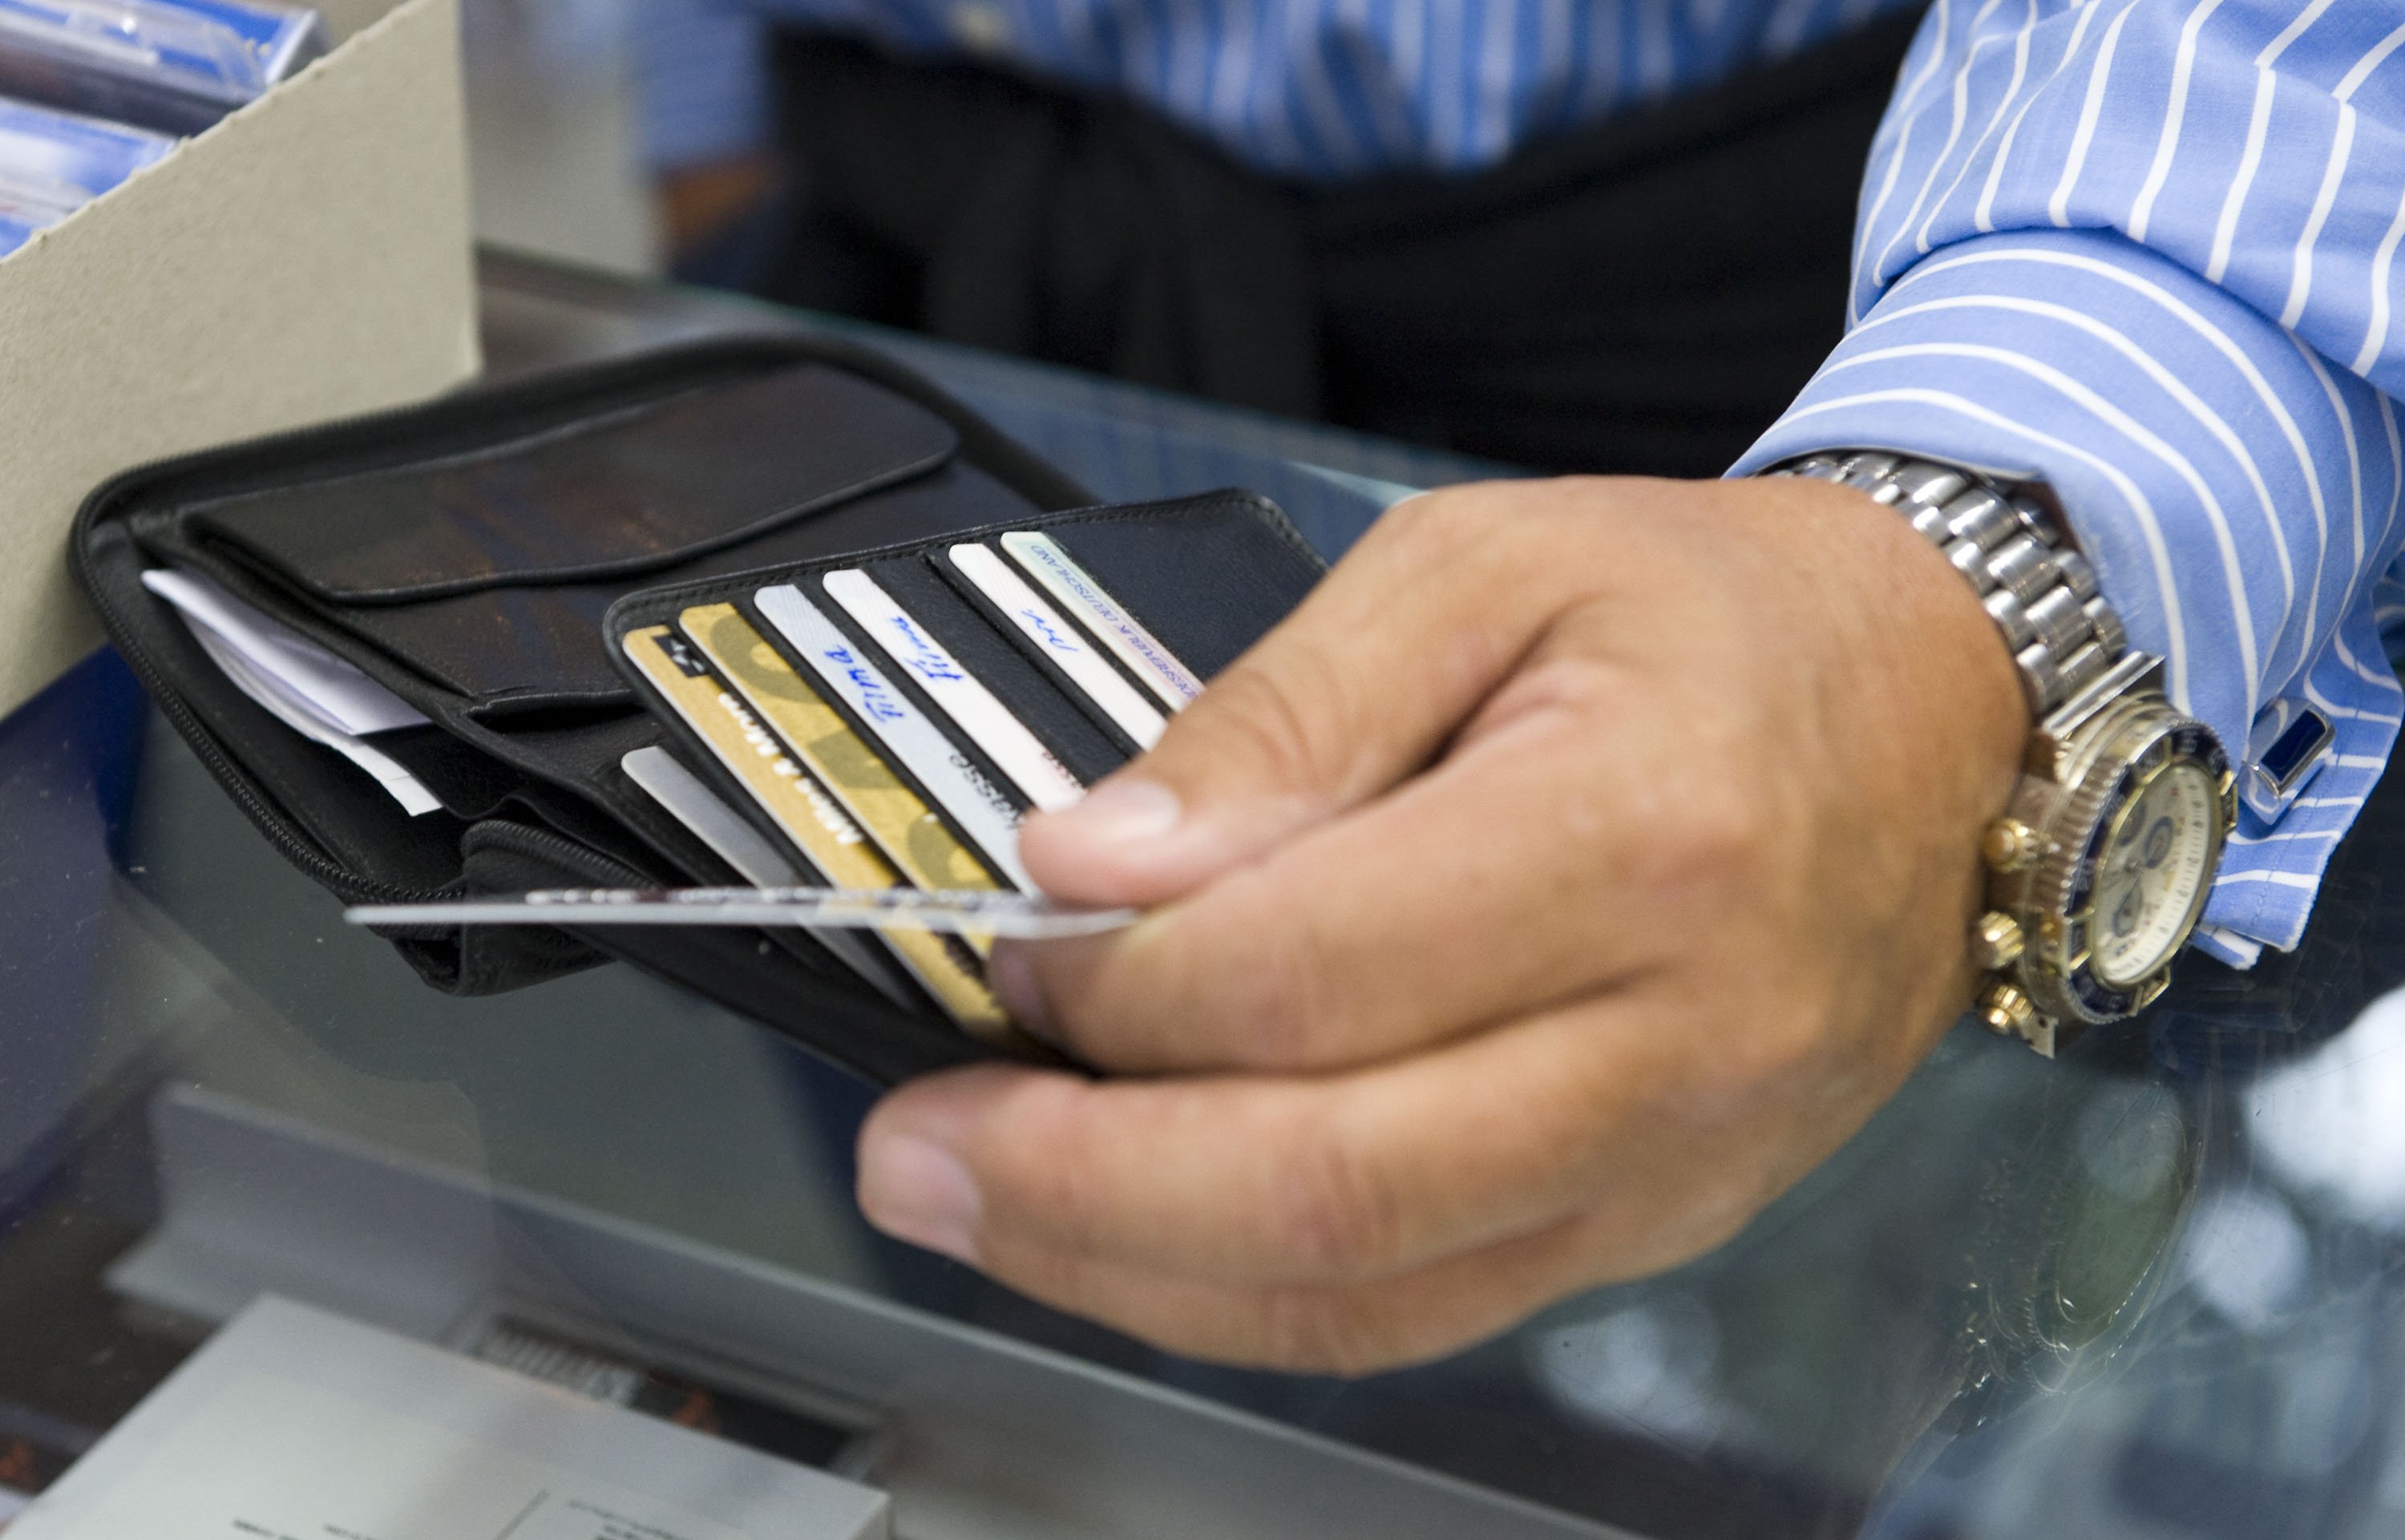 Πόσες πιστωτικές και χρεωστικές κάρτες κυκλοφορούν στην Ελλάδα;